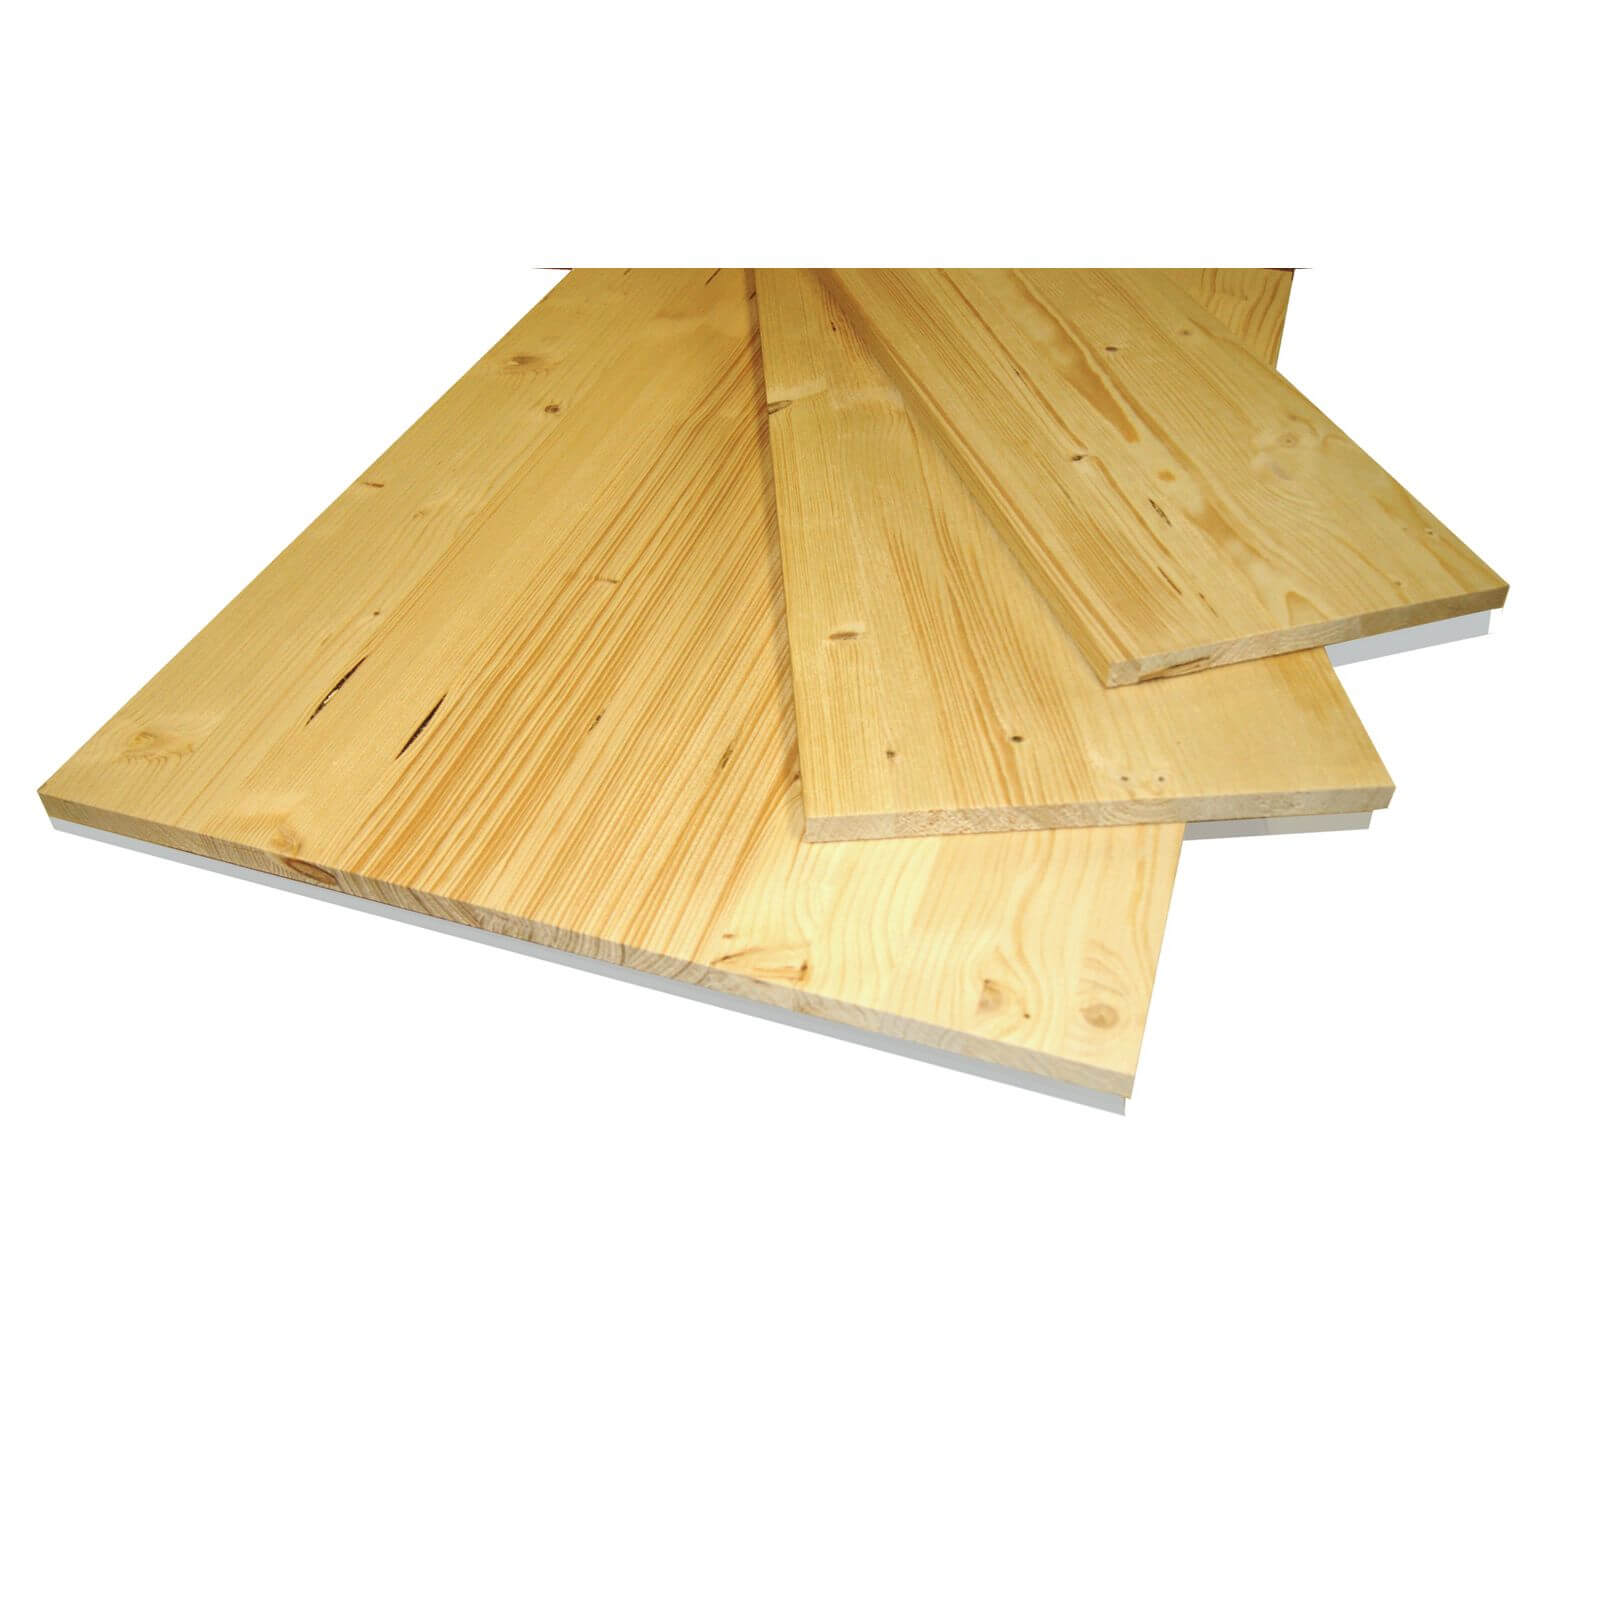 Metsa Wood Solid Spruce Wooden Panel Board 1.75m (18 x 300 x 1750mm)